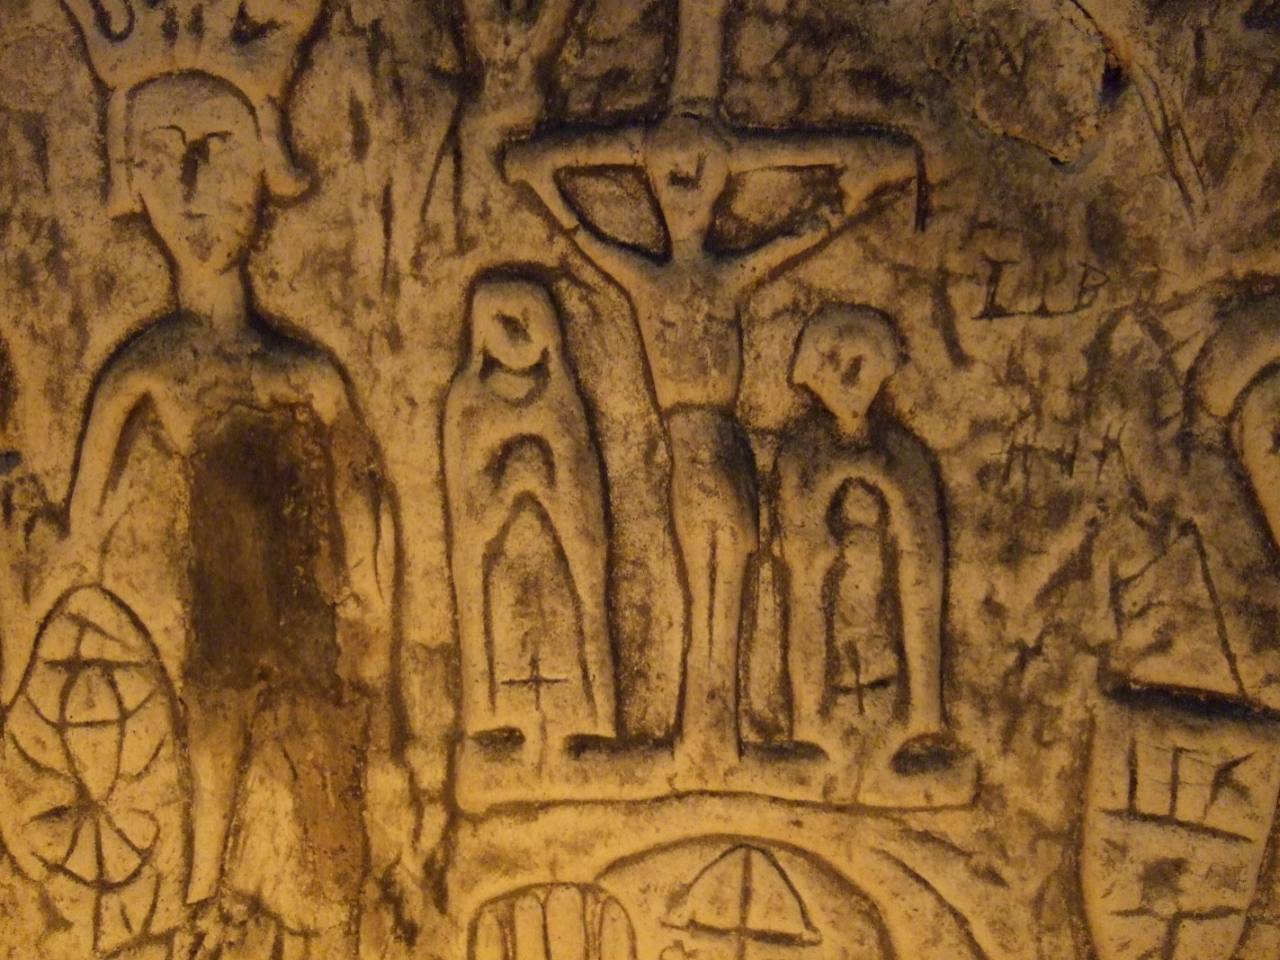 人造罗伊斯顿洞穴 4 中的神秘符号和雕刻